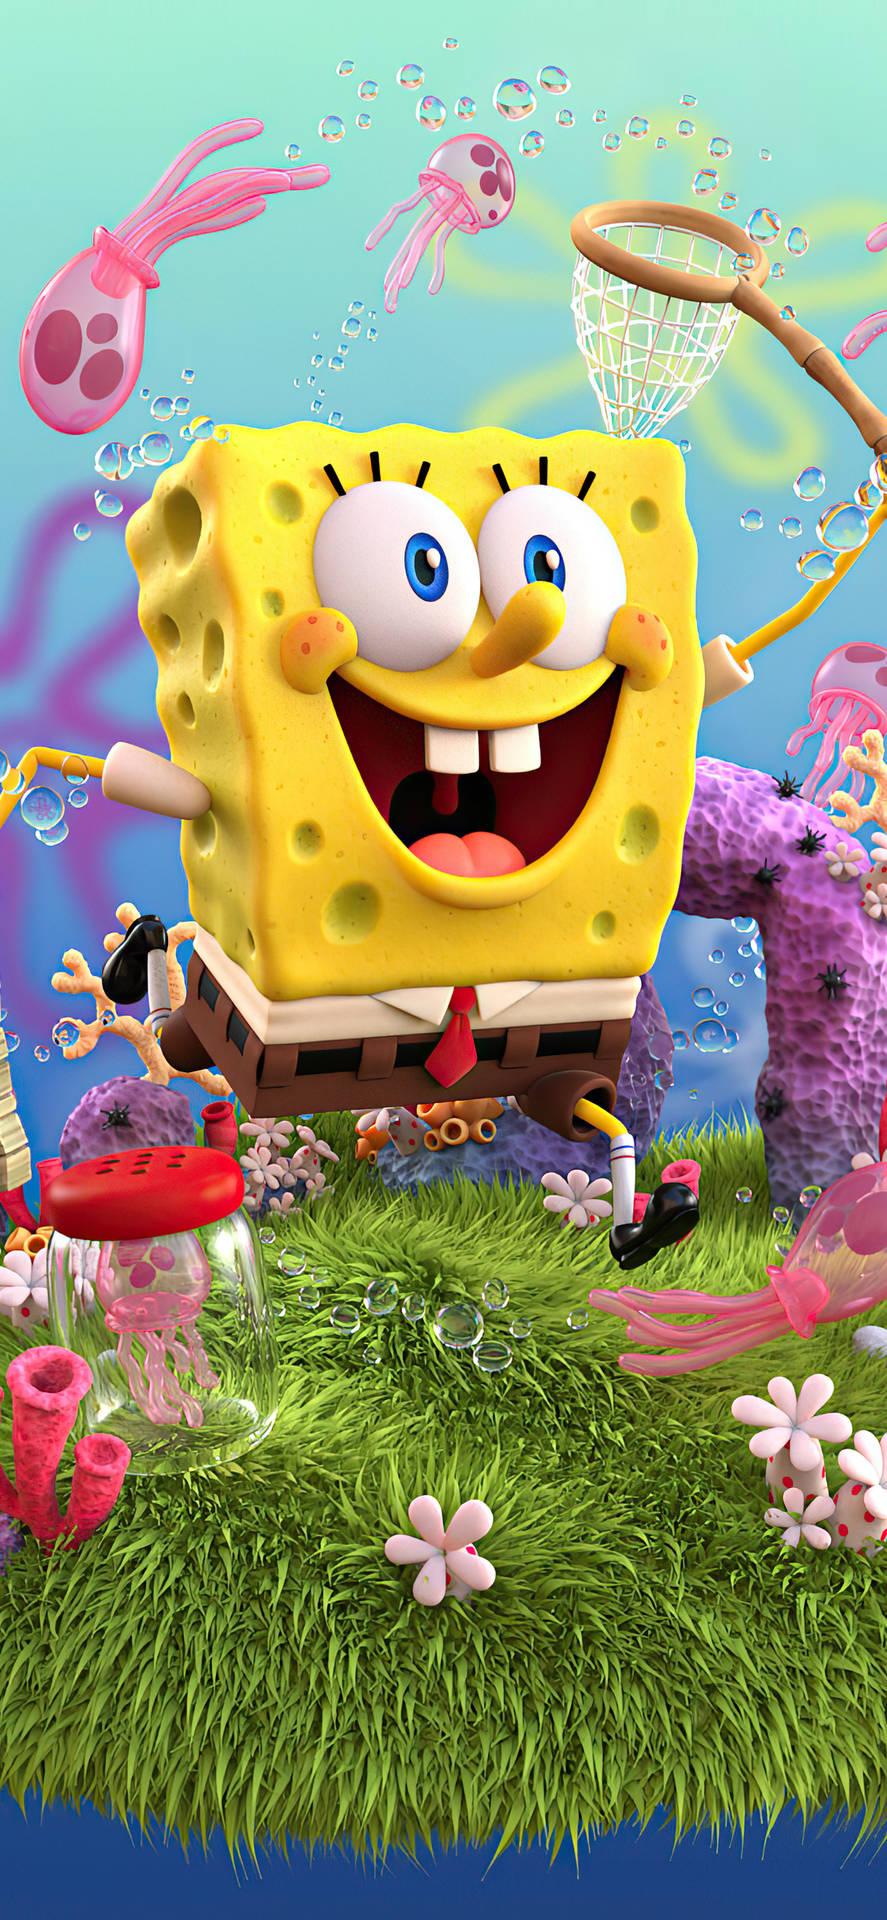 Cập nhật hình nền Spongebob 3D cho Iphone X và trang trí điện thoại của bạn với nhân vật yêu thích từ Những Chú Hái Tình. Hình nền sống động và màu sắc tươi vui sẽ mang đến cho bạn một trải nghiệm giải trí thú vị và đầy màu sắc.